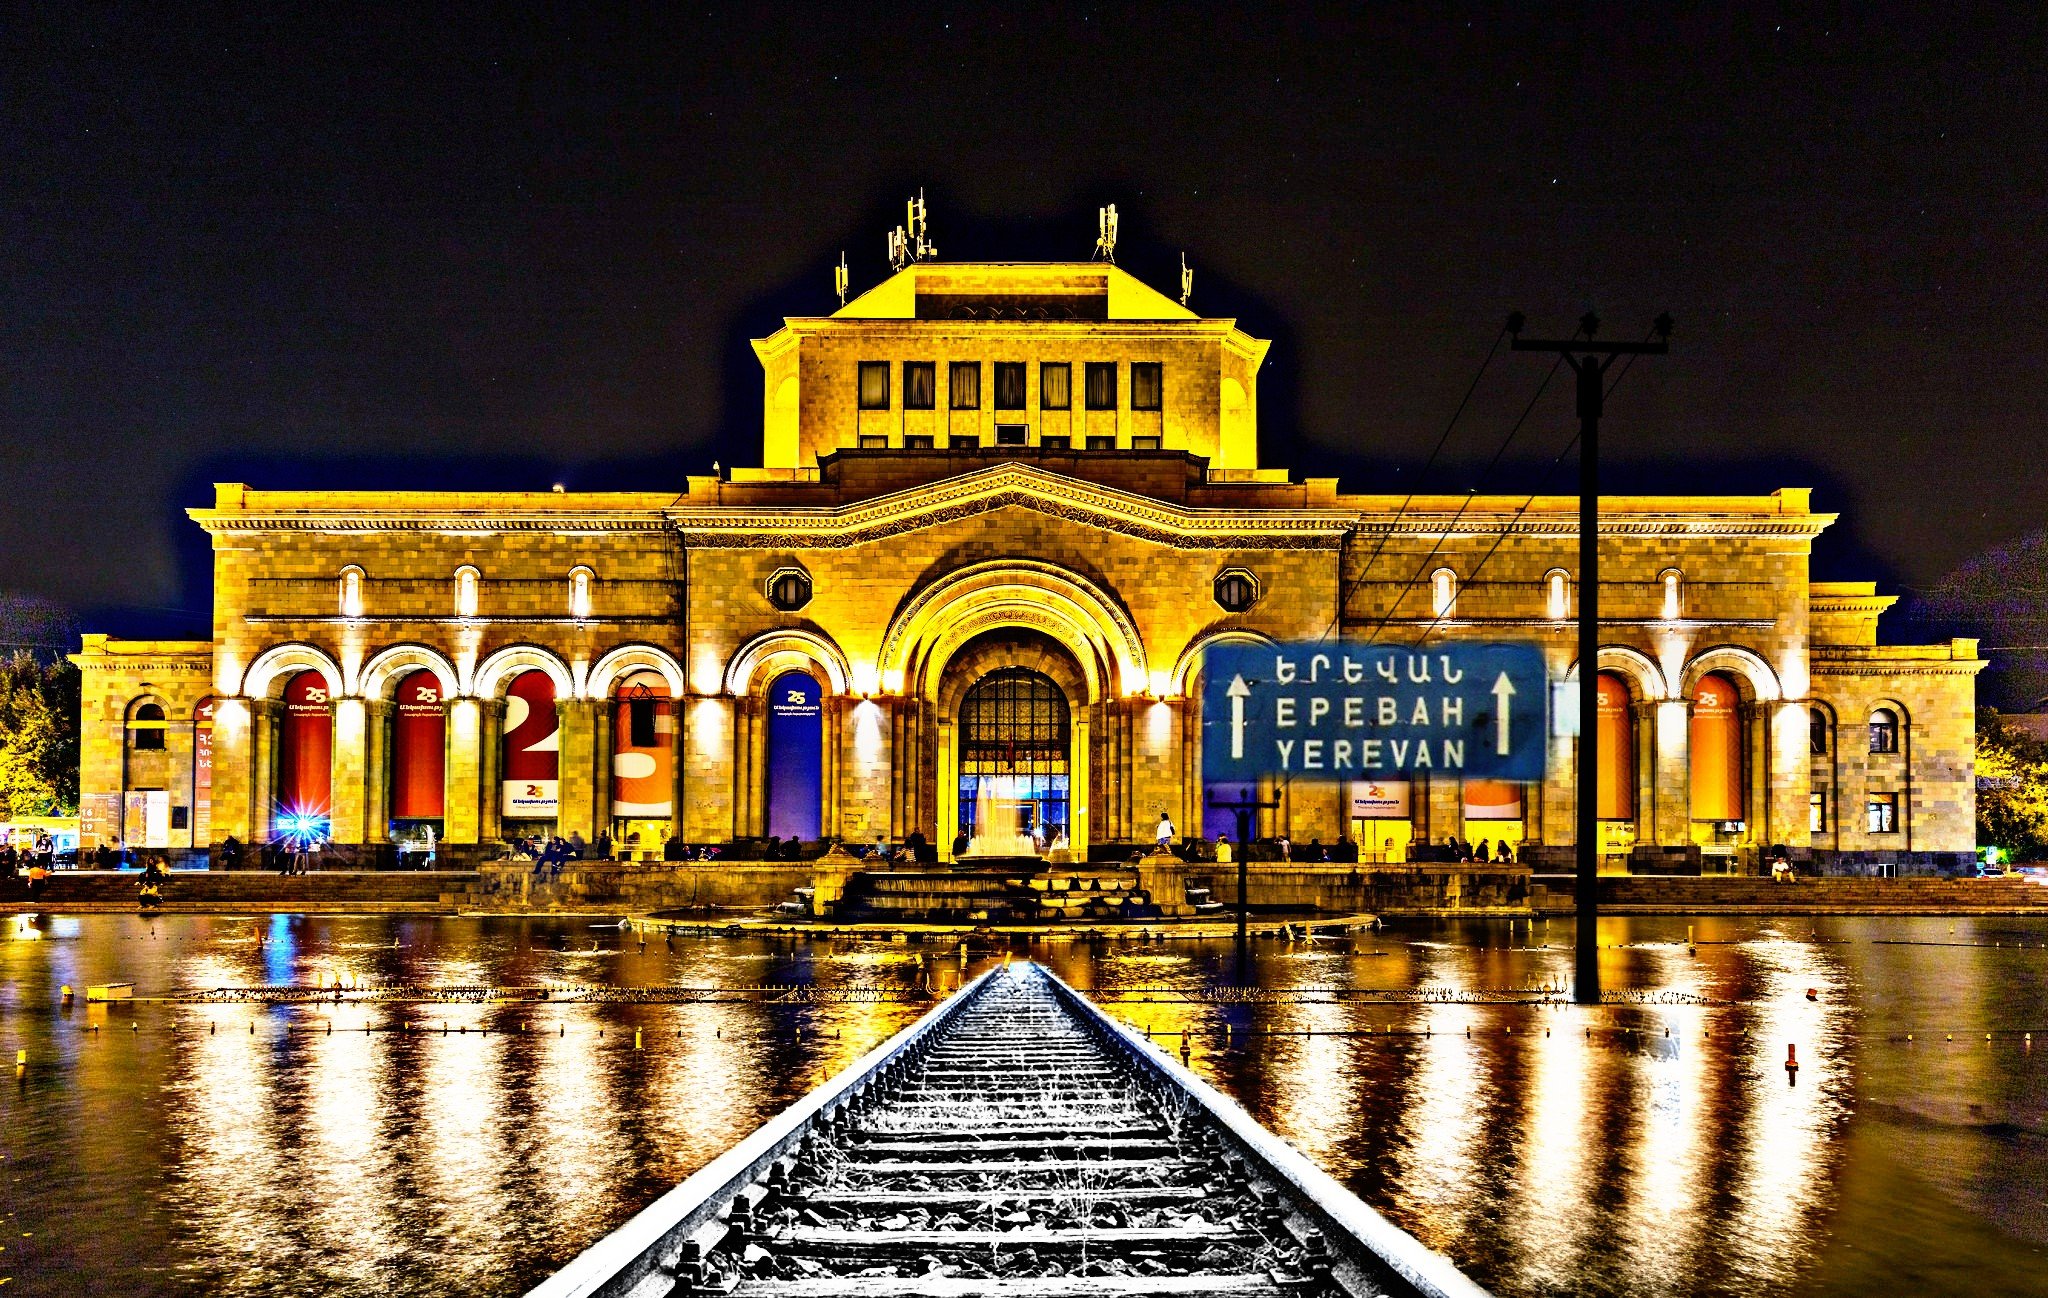 Ереван 0. Ночной вокзал Еревана. Армения Ереван площадь Республики. Железнодорожный вокзал Ереван. Армения Ереван ЖД вокзал.